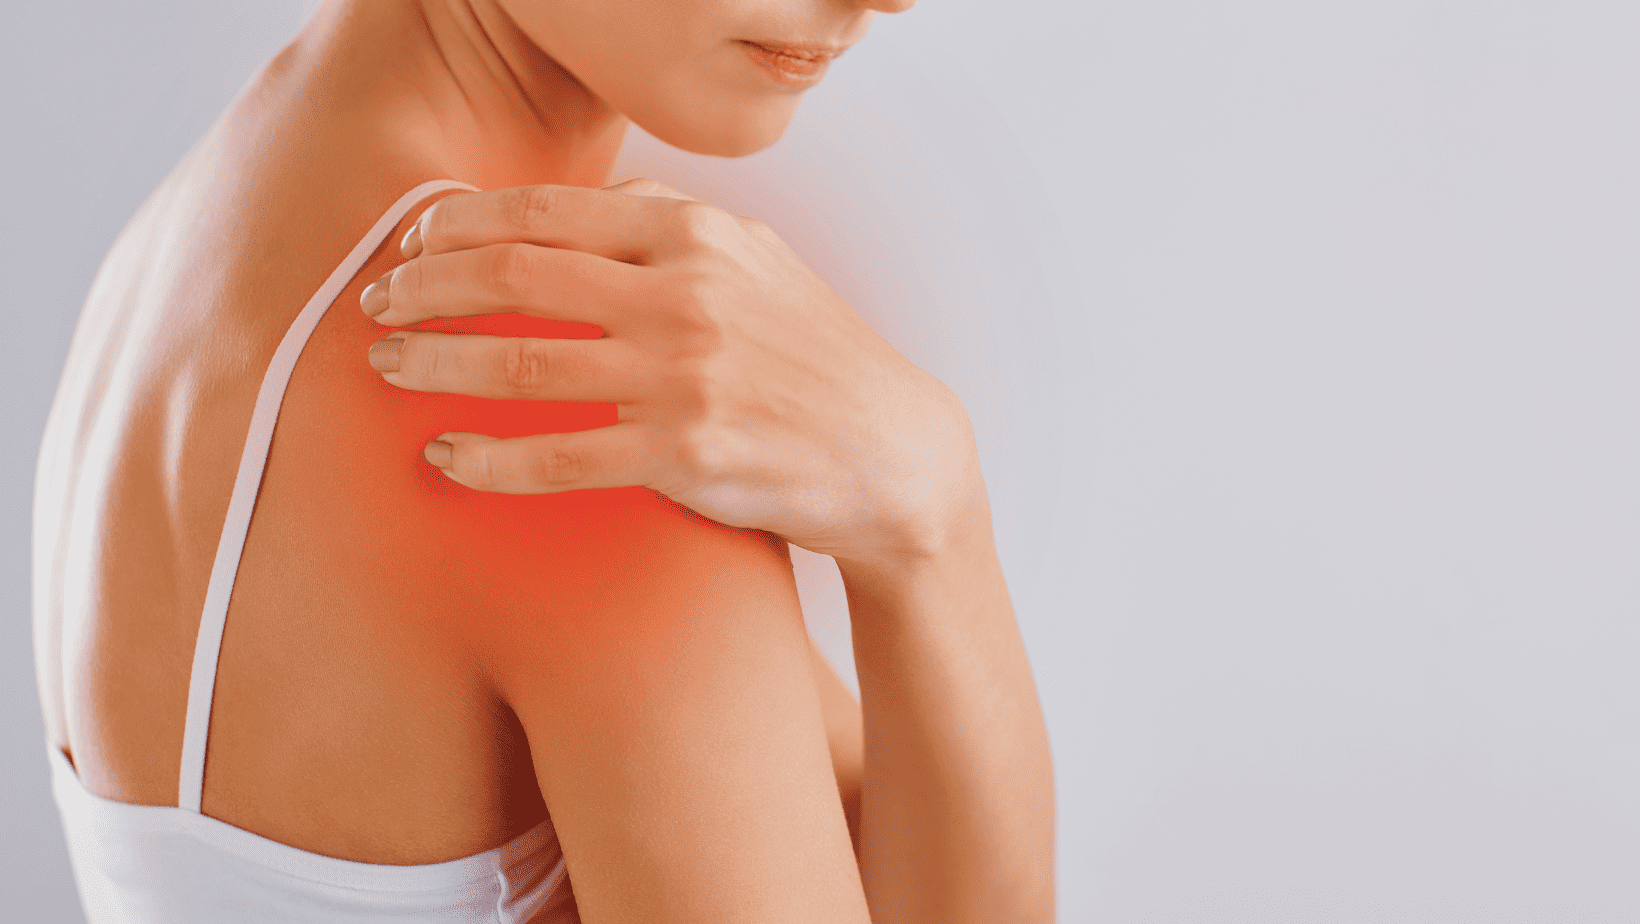 Myths About Shoulder Pain